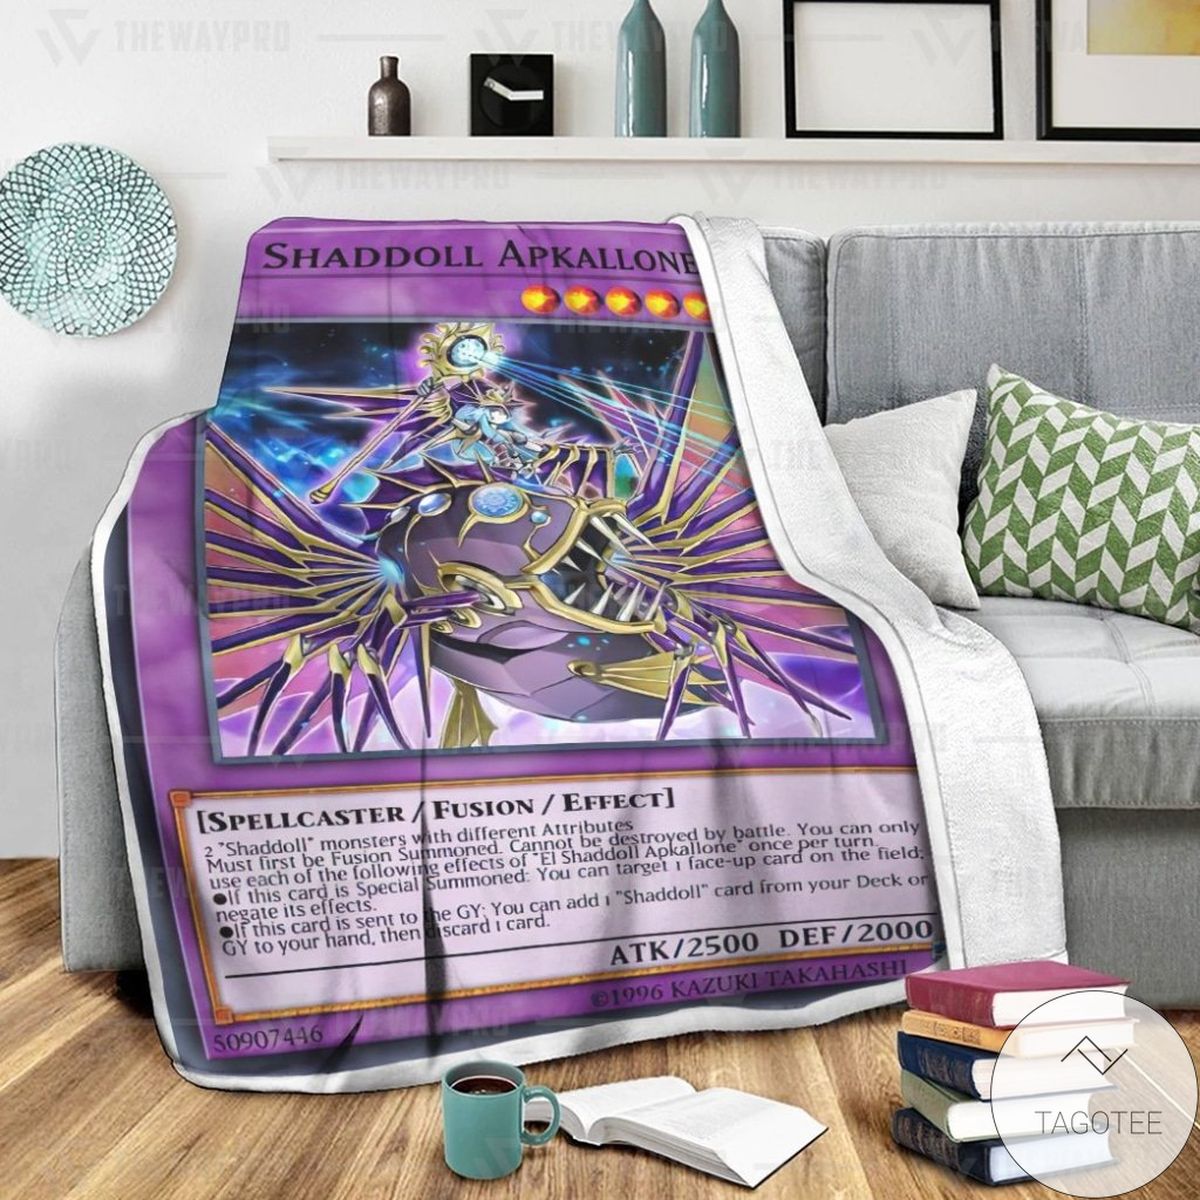 El Shaddoll Apkallone Custom Blanket